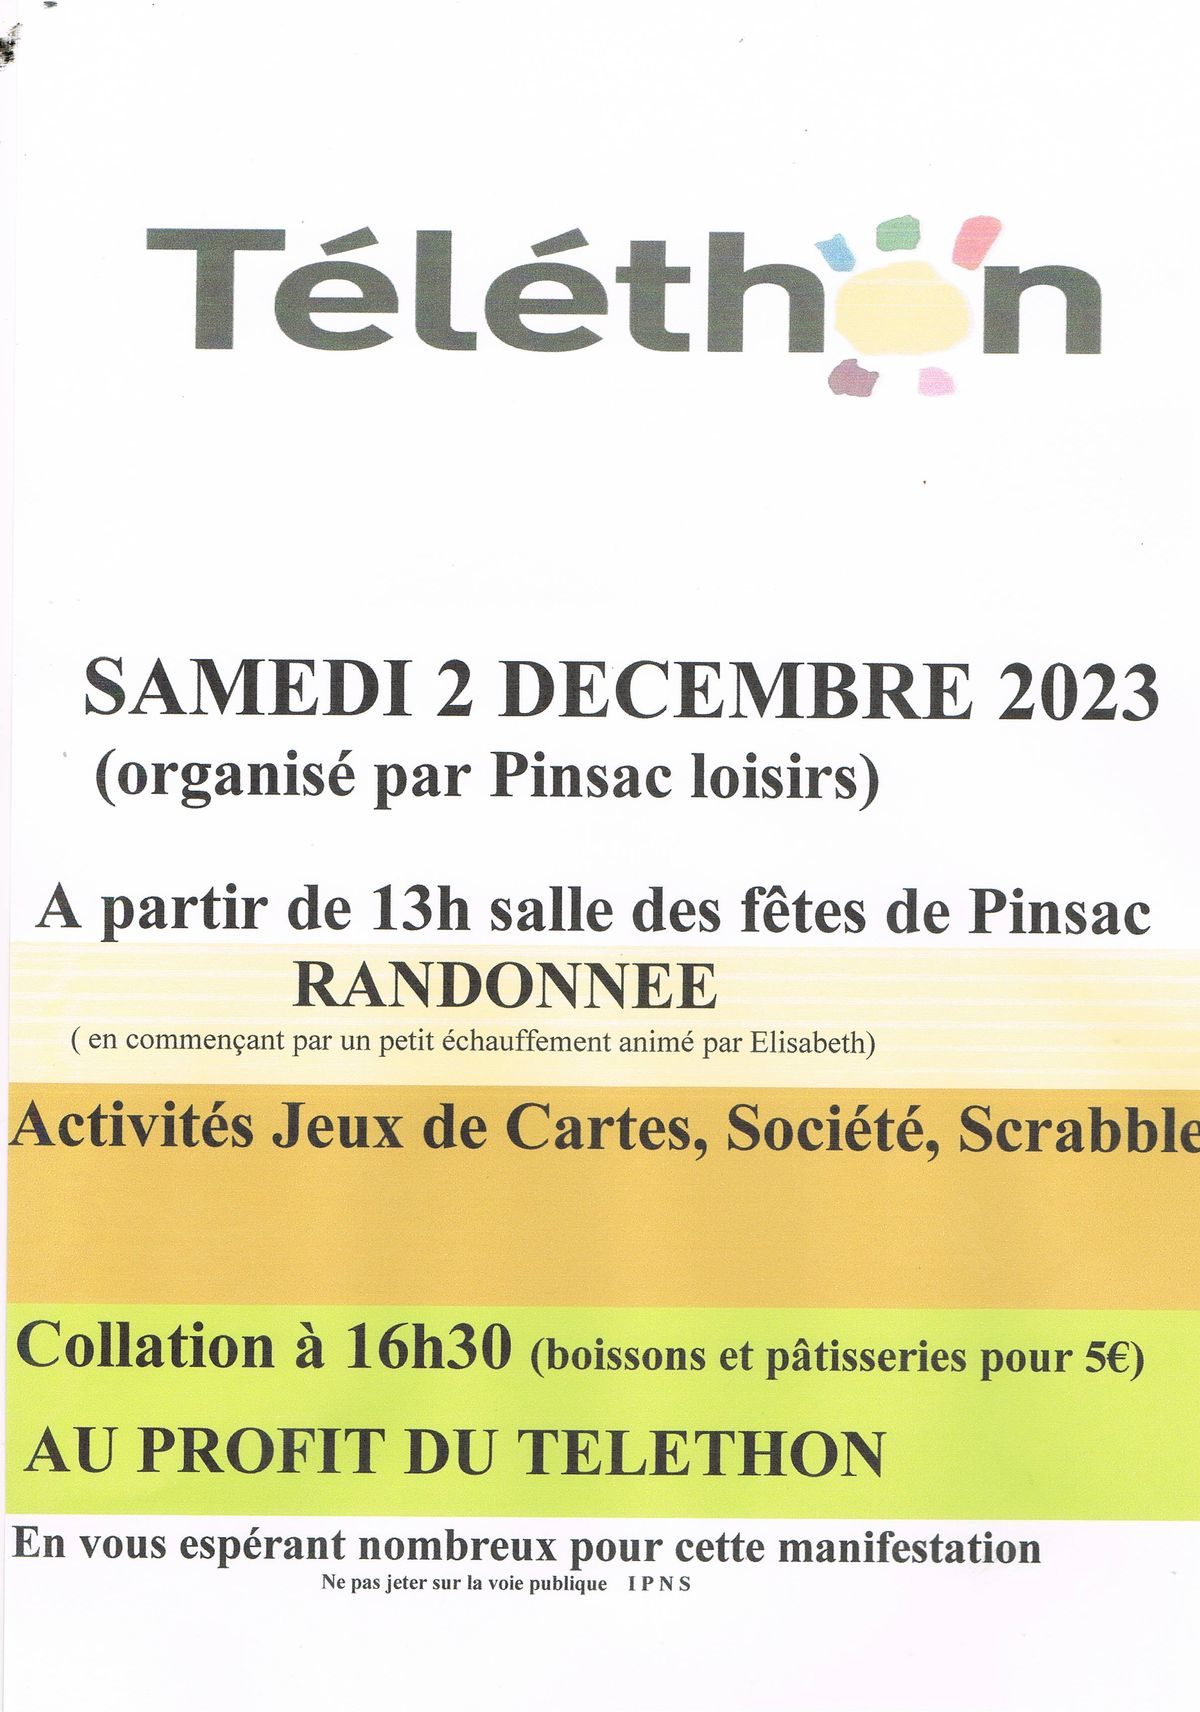 telethon-2023